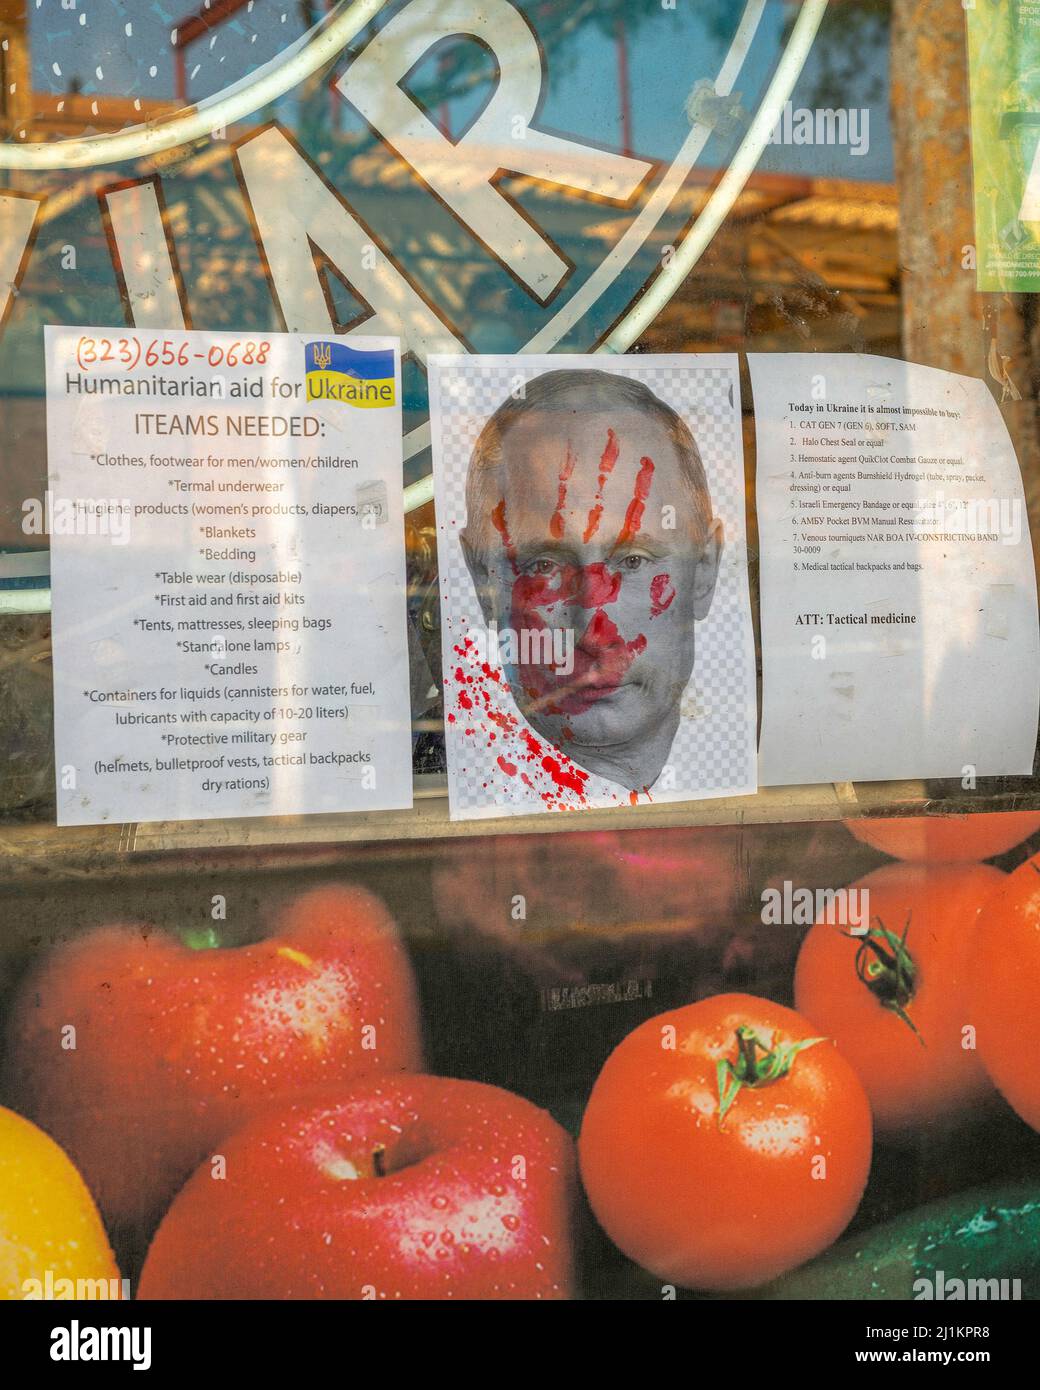 West Hollywood, CA, USA - 26 mars 2022 : gros plan d'une vitrine de magasin ukrainienne avec des dépliants faisant la promotion de l'aide pour l'Ukraine ainsi qu'une image de Poutine avec Banque D'Images